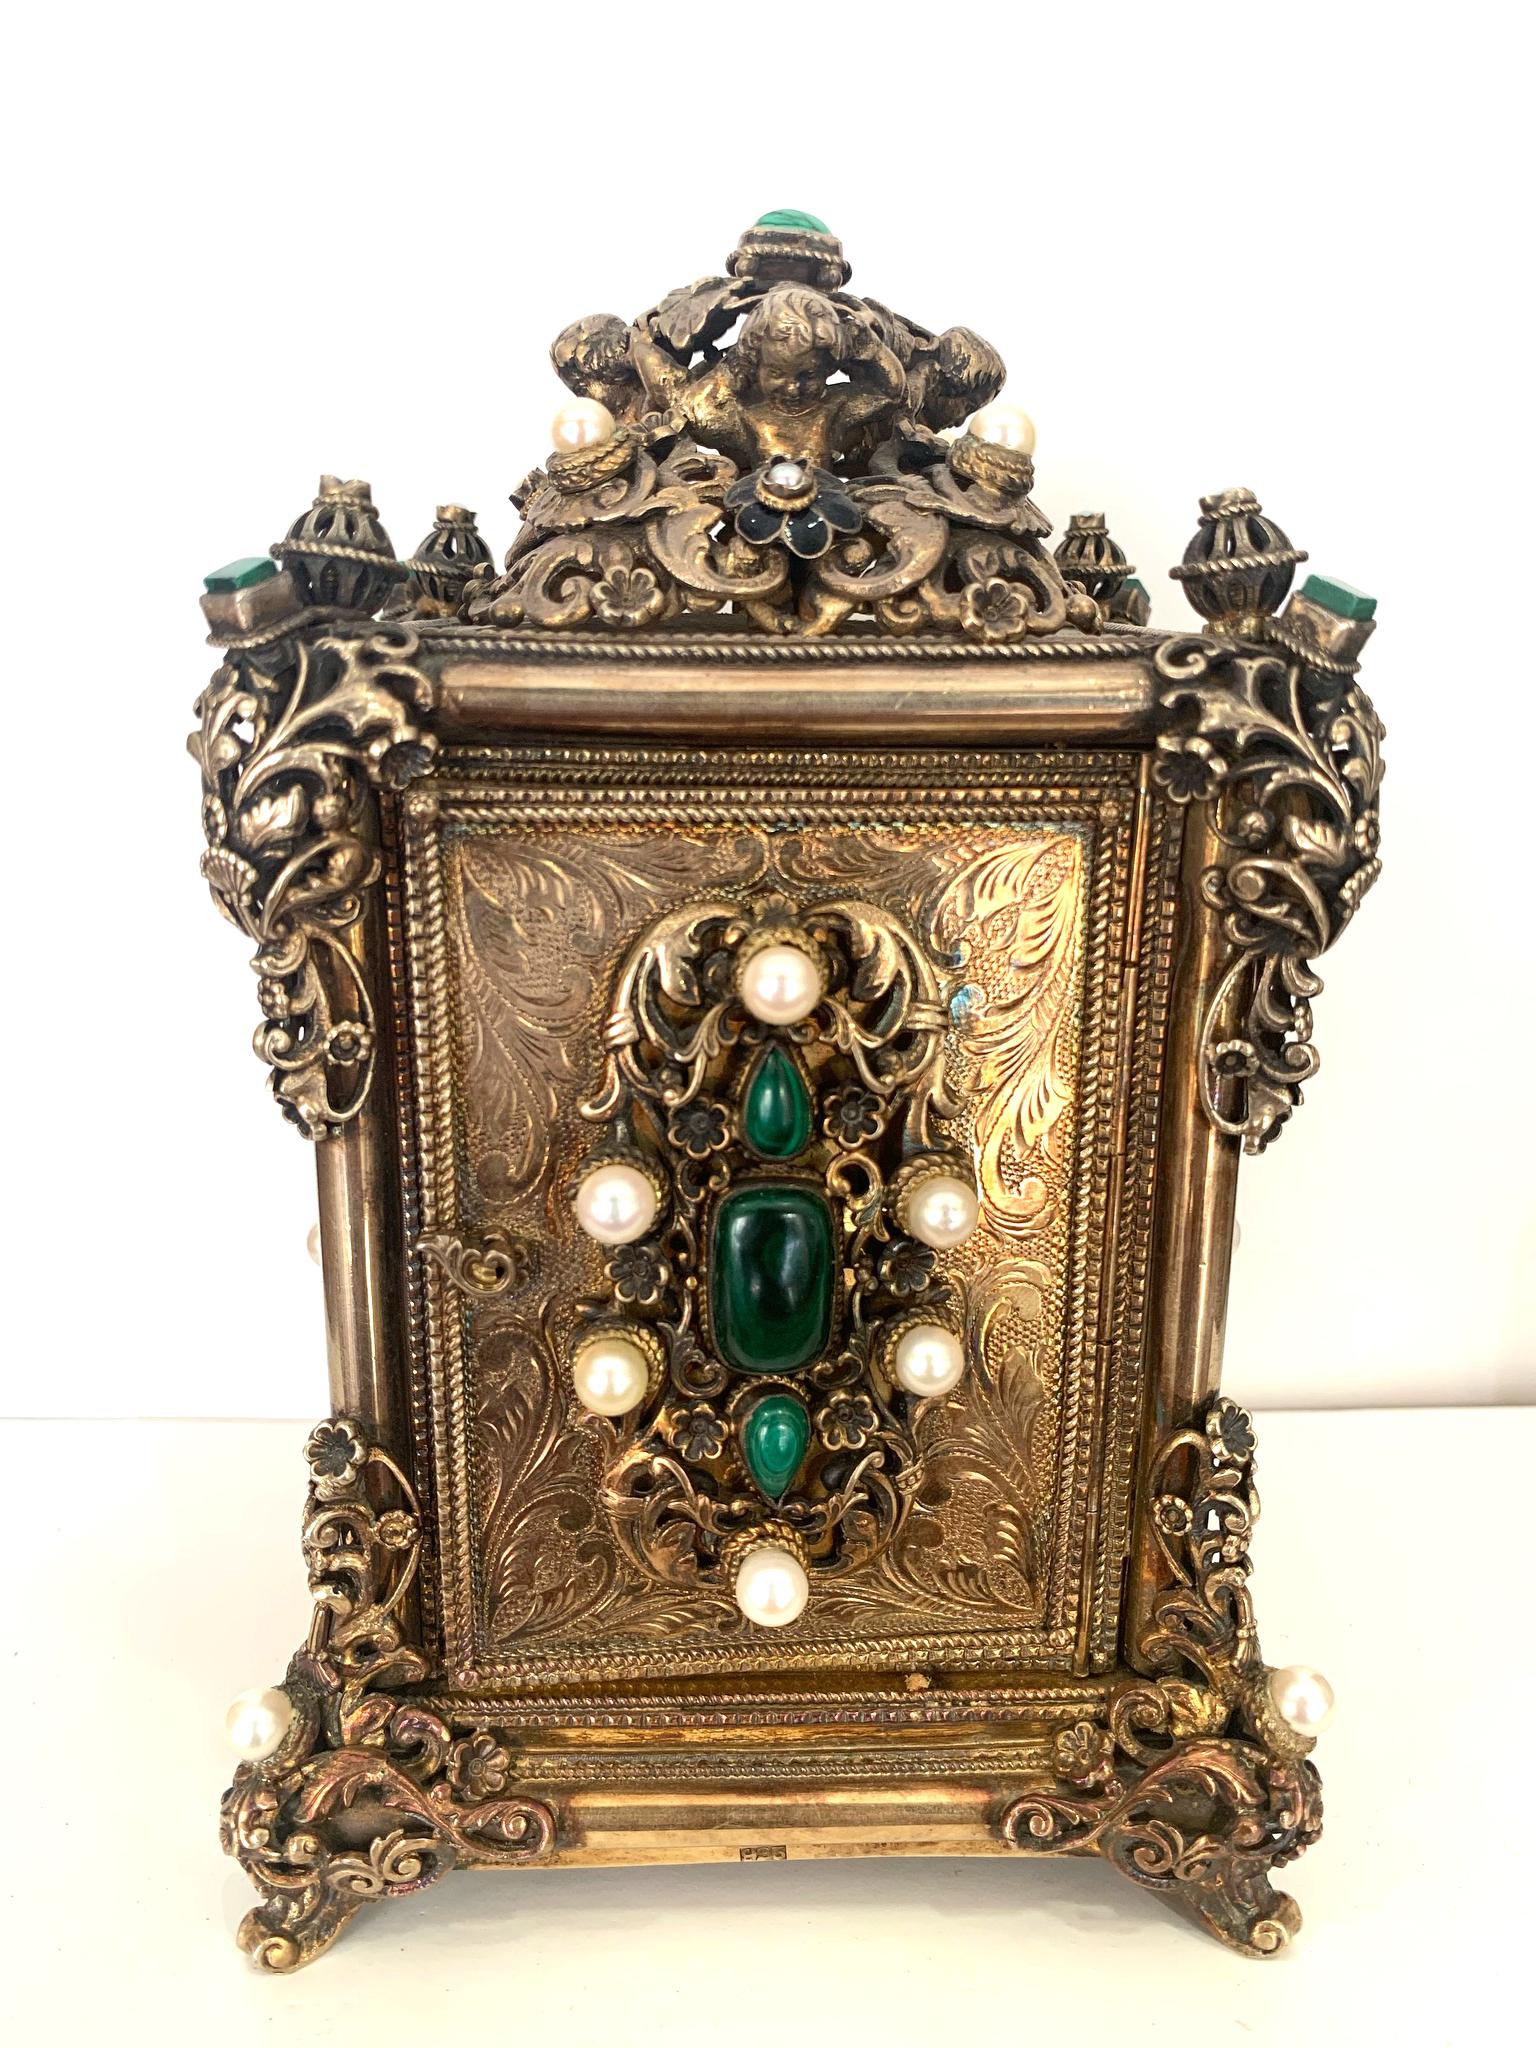 Orologio da tavolo antico

Orologio dal design splendido, risalente agli anni '30. 
Realizzato in argento con perle e preziose pietre verdi.

